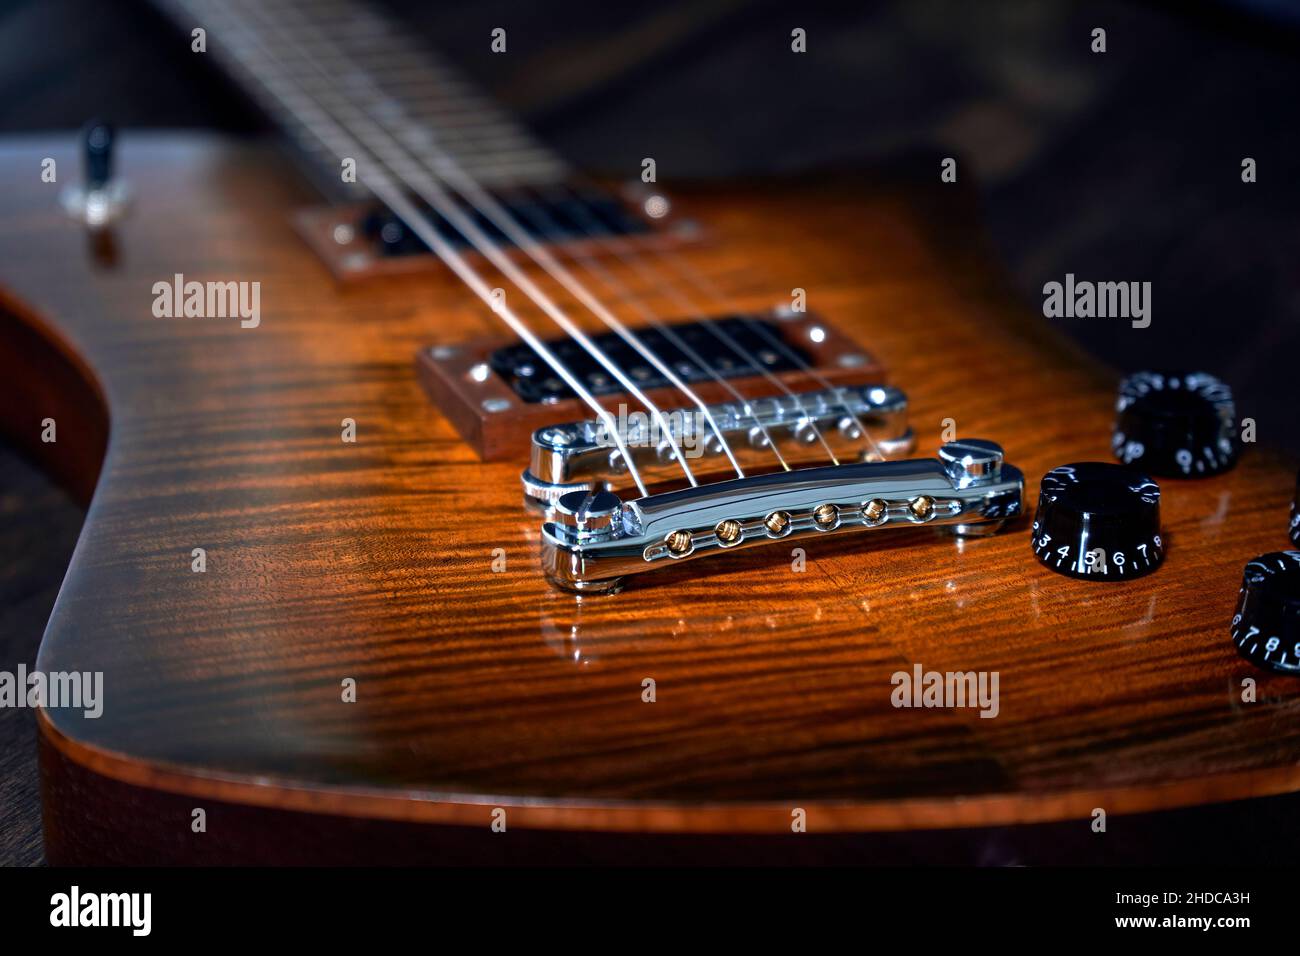 E-Gitarre Detailansicht mit schöner Holzmaserung auf dunklen Holz Hintergrund Stock Photo